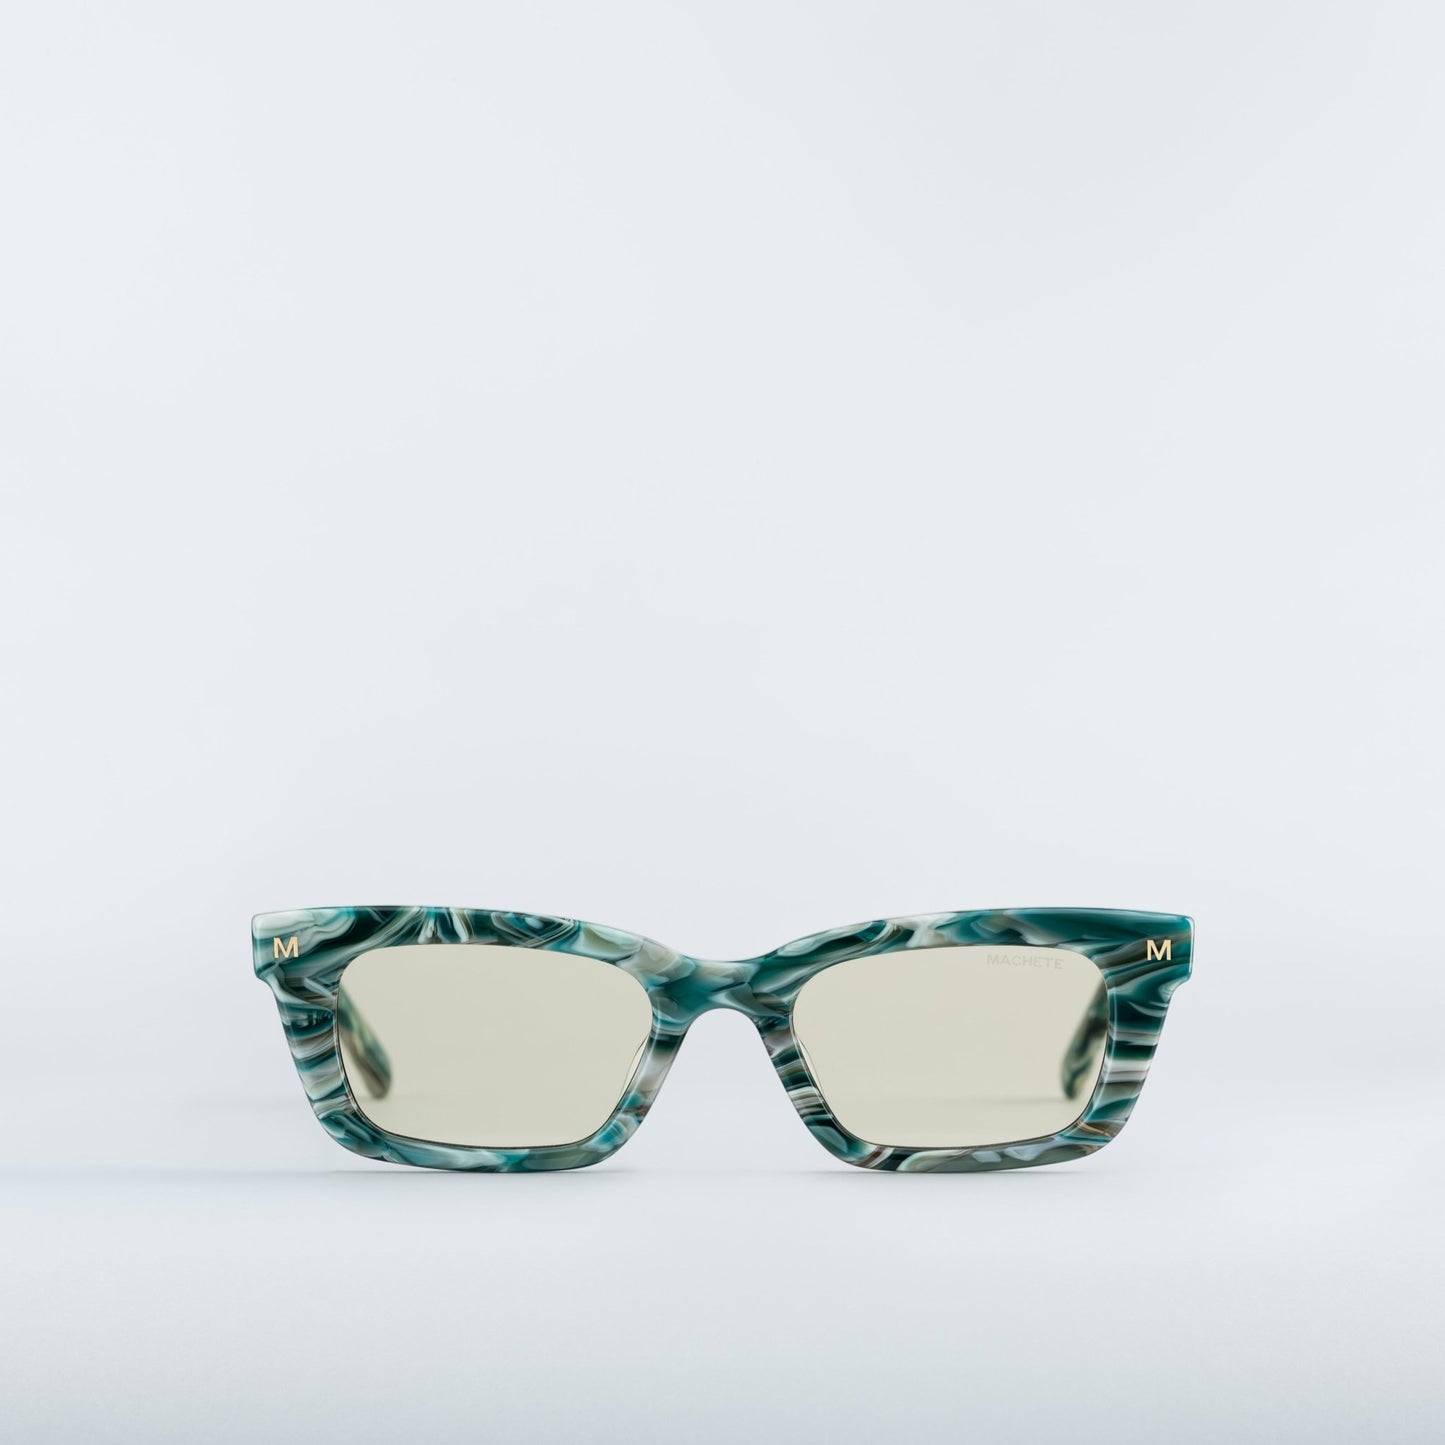 MACHETE Ruby Sunglasses in Stromanthe